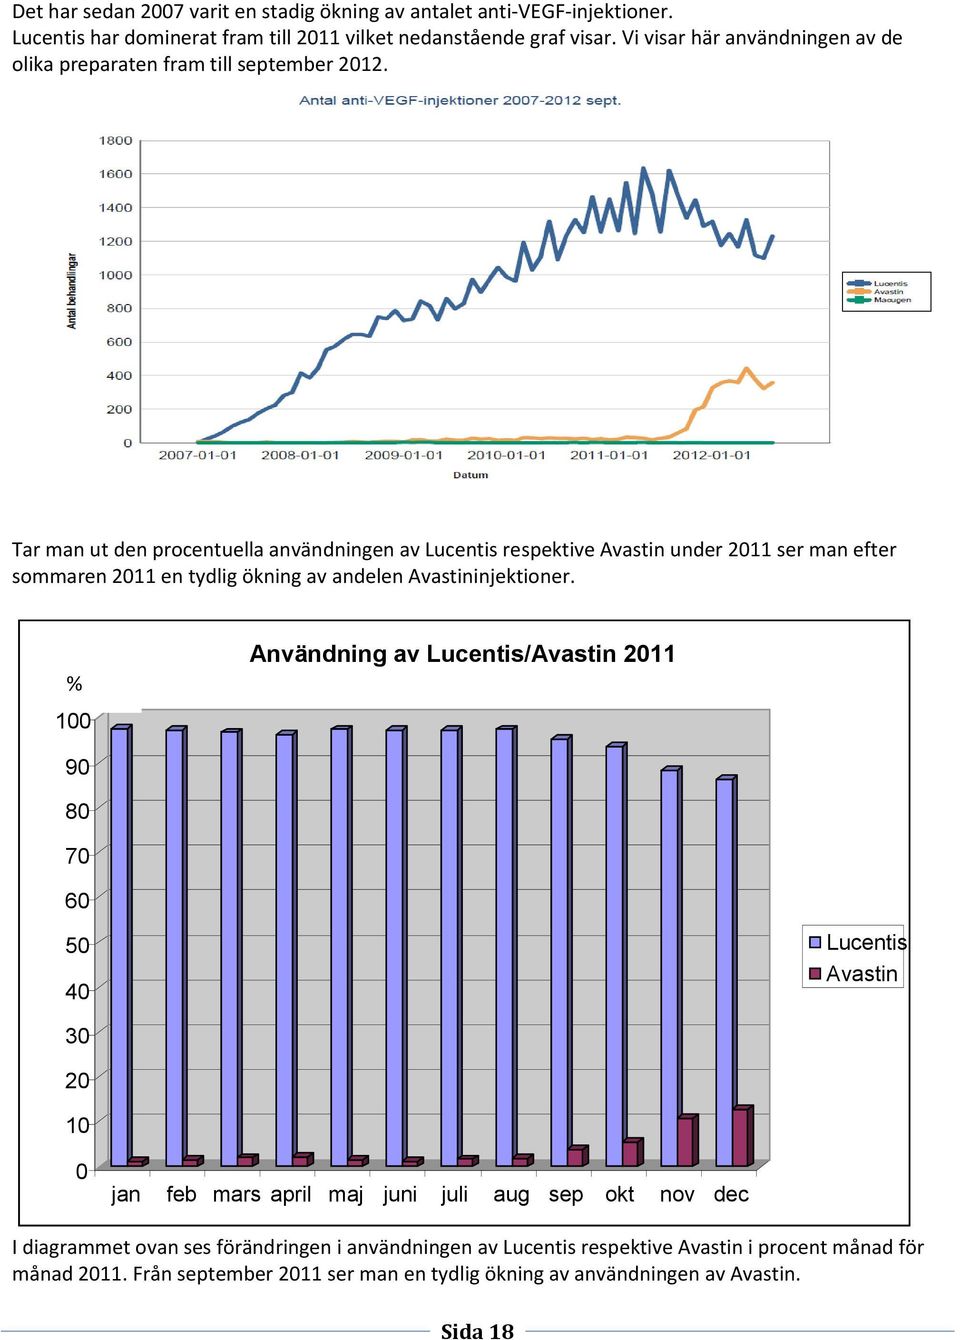 Tar man ut den procentuella användningen av Lucentis respektive Avastin under 2011 ser man efter sommaren 2011 en tydlig ökning av andelen Avastininjektioner.